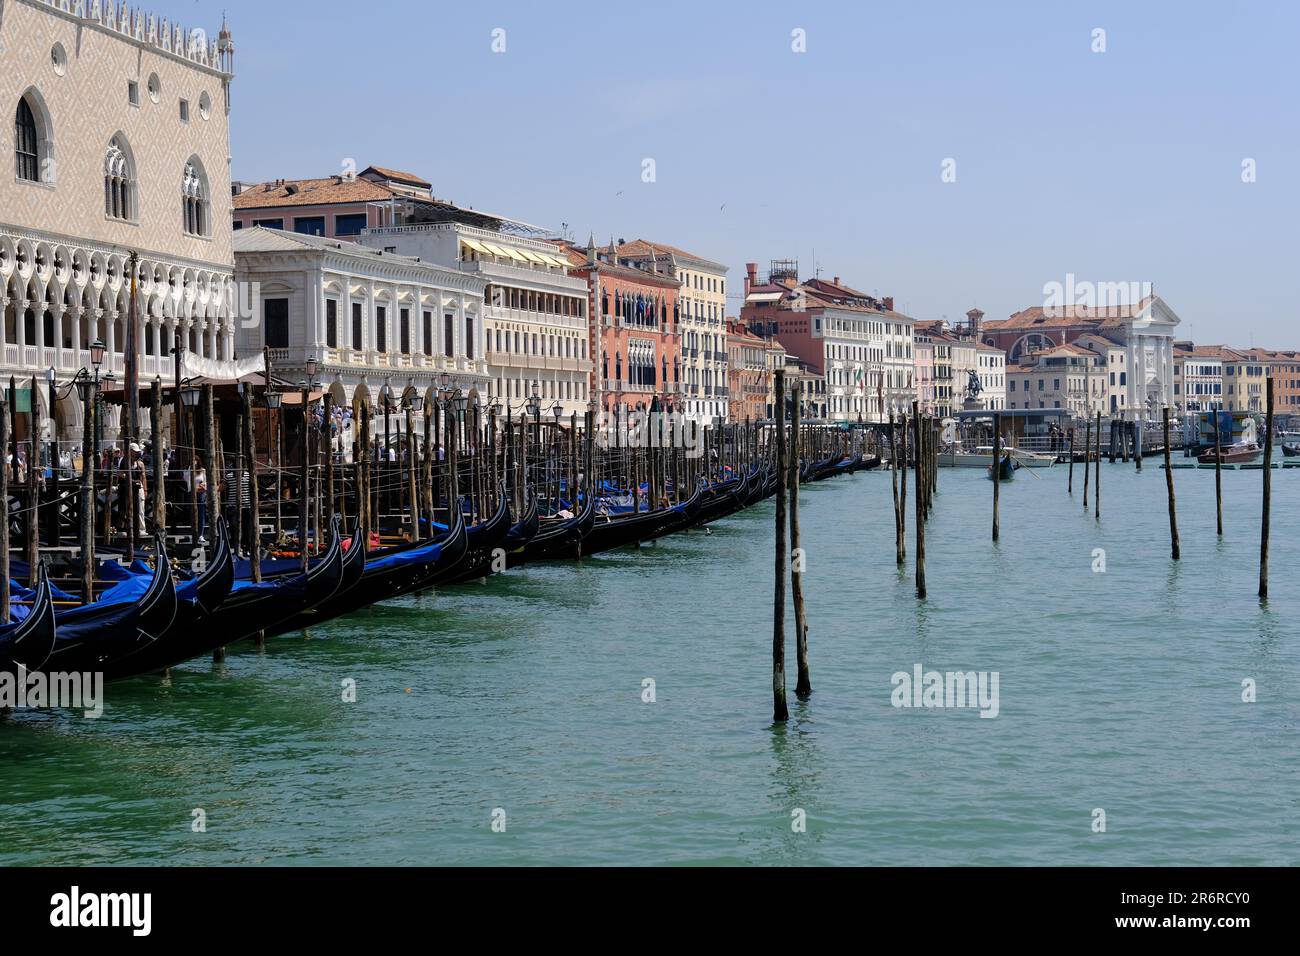 Venise Italie - vue sur le Grand Canal vers le service de télécabine sur la place Saint-Marc Banque D'Images